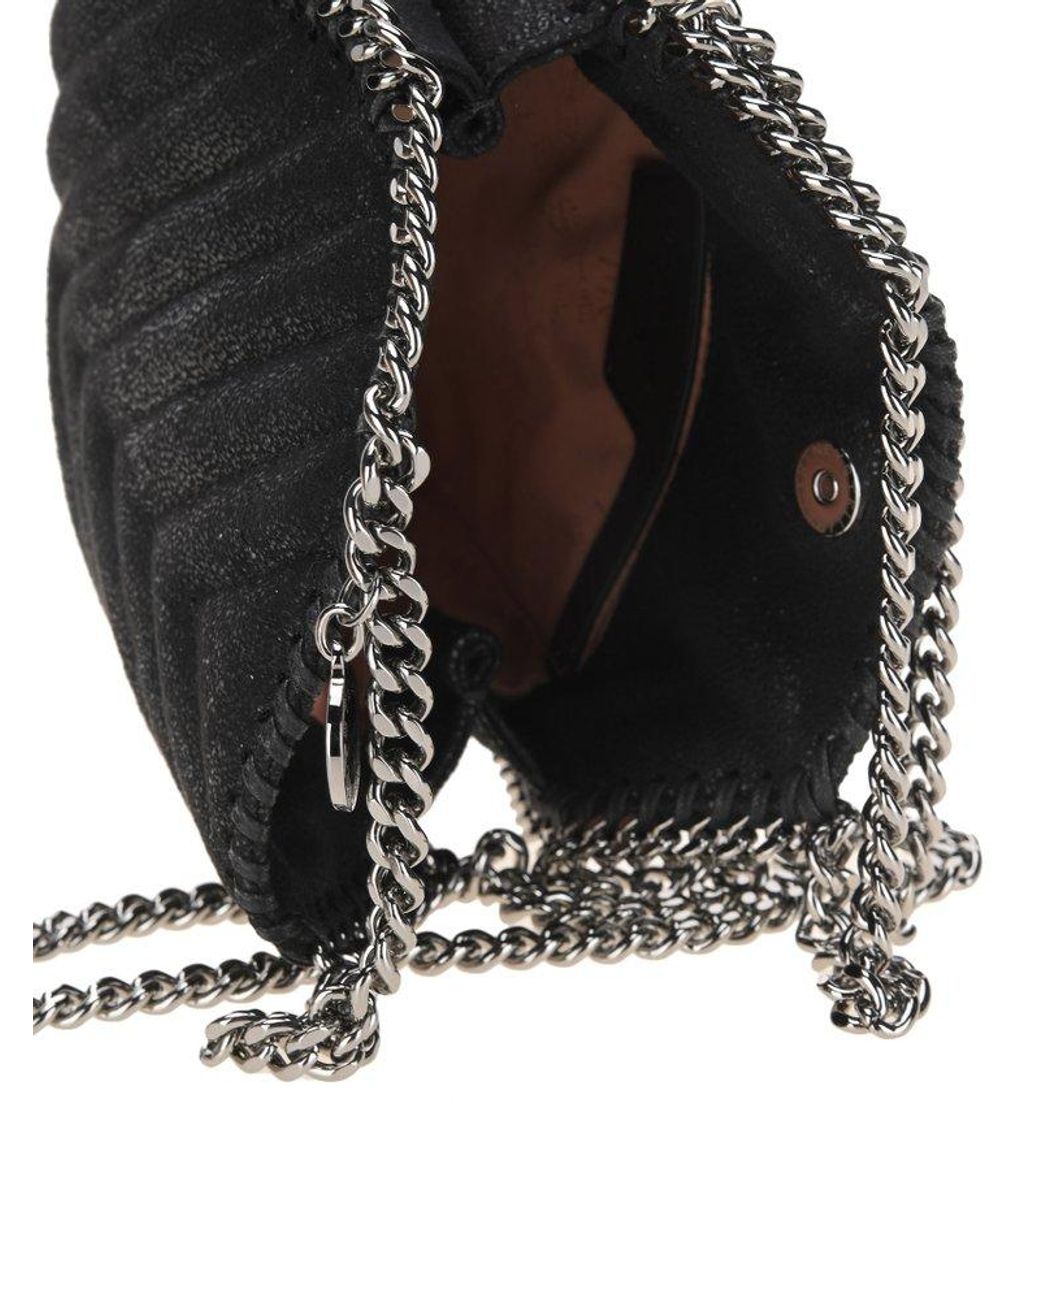 Women's Valentino Garavani Bags from C$1,020